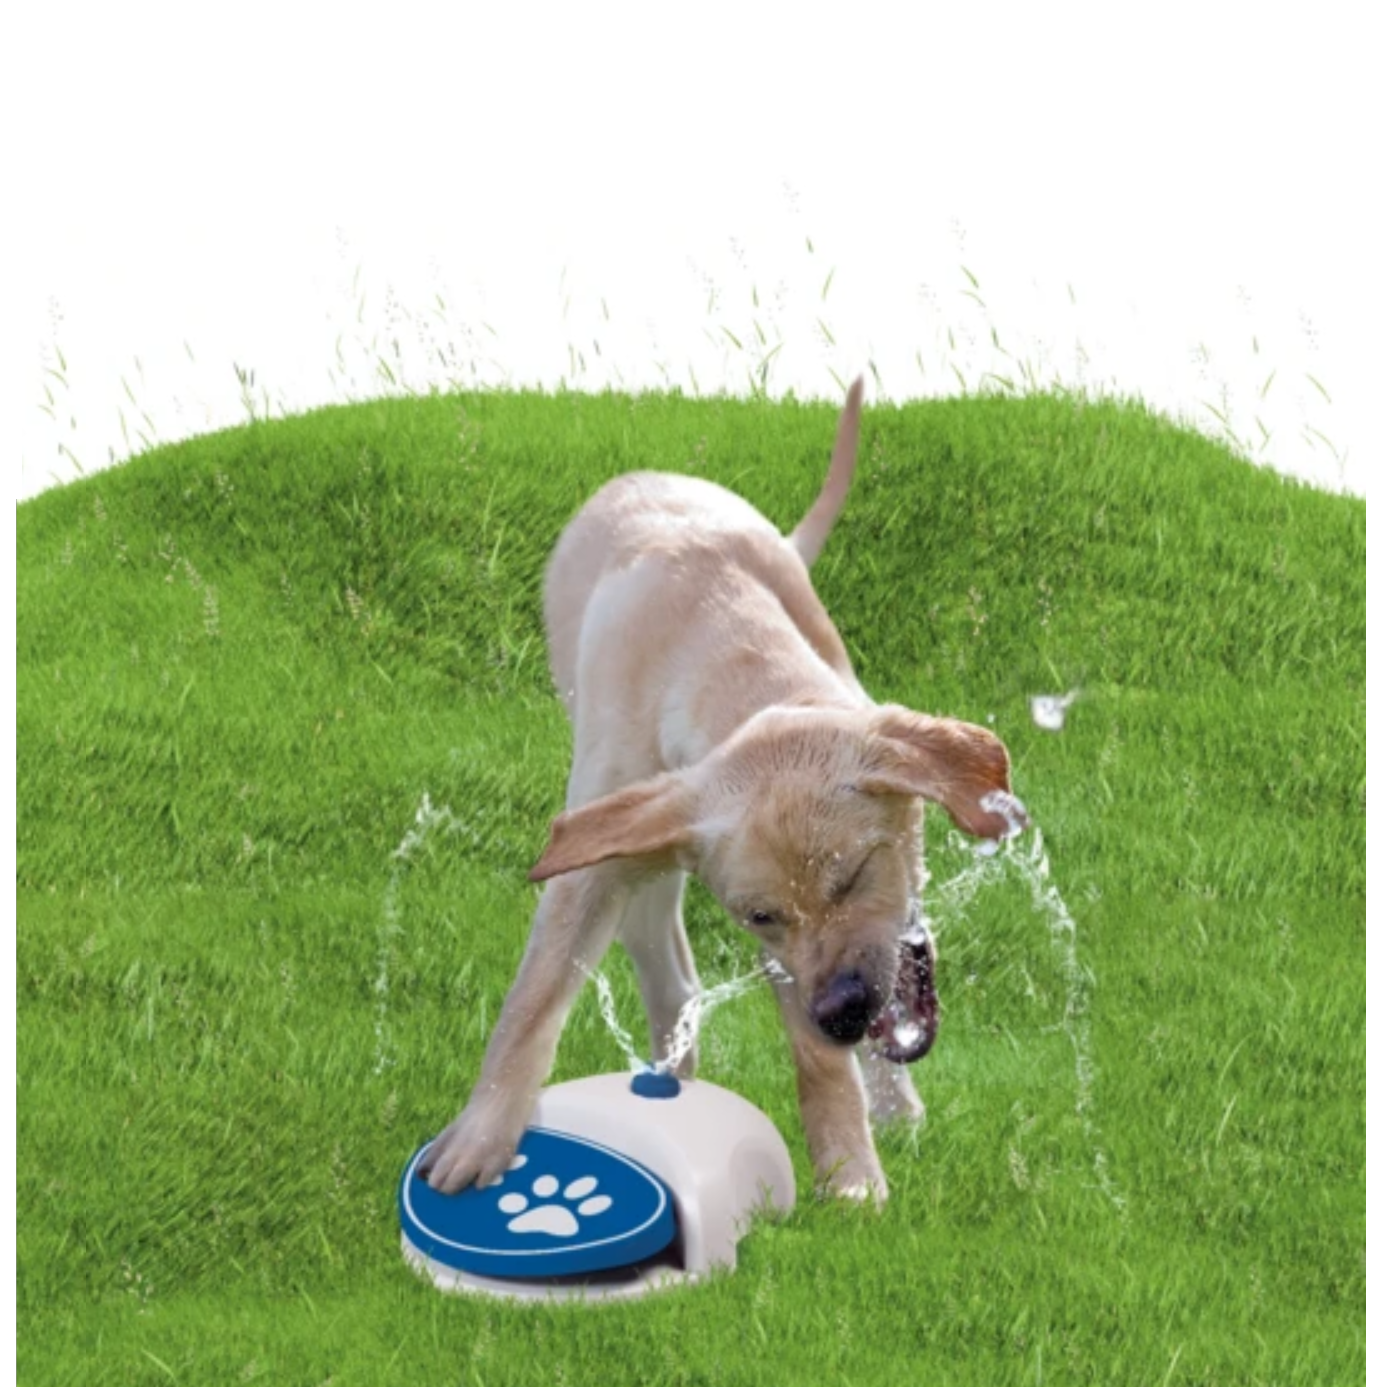 Verplicht communicatie vertraging Waterfontein voor honden - Dierenoppas Amersfoort | Webshop bijzondere  huisdier producten!